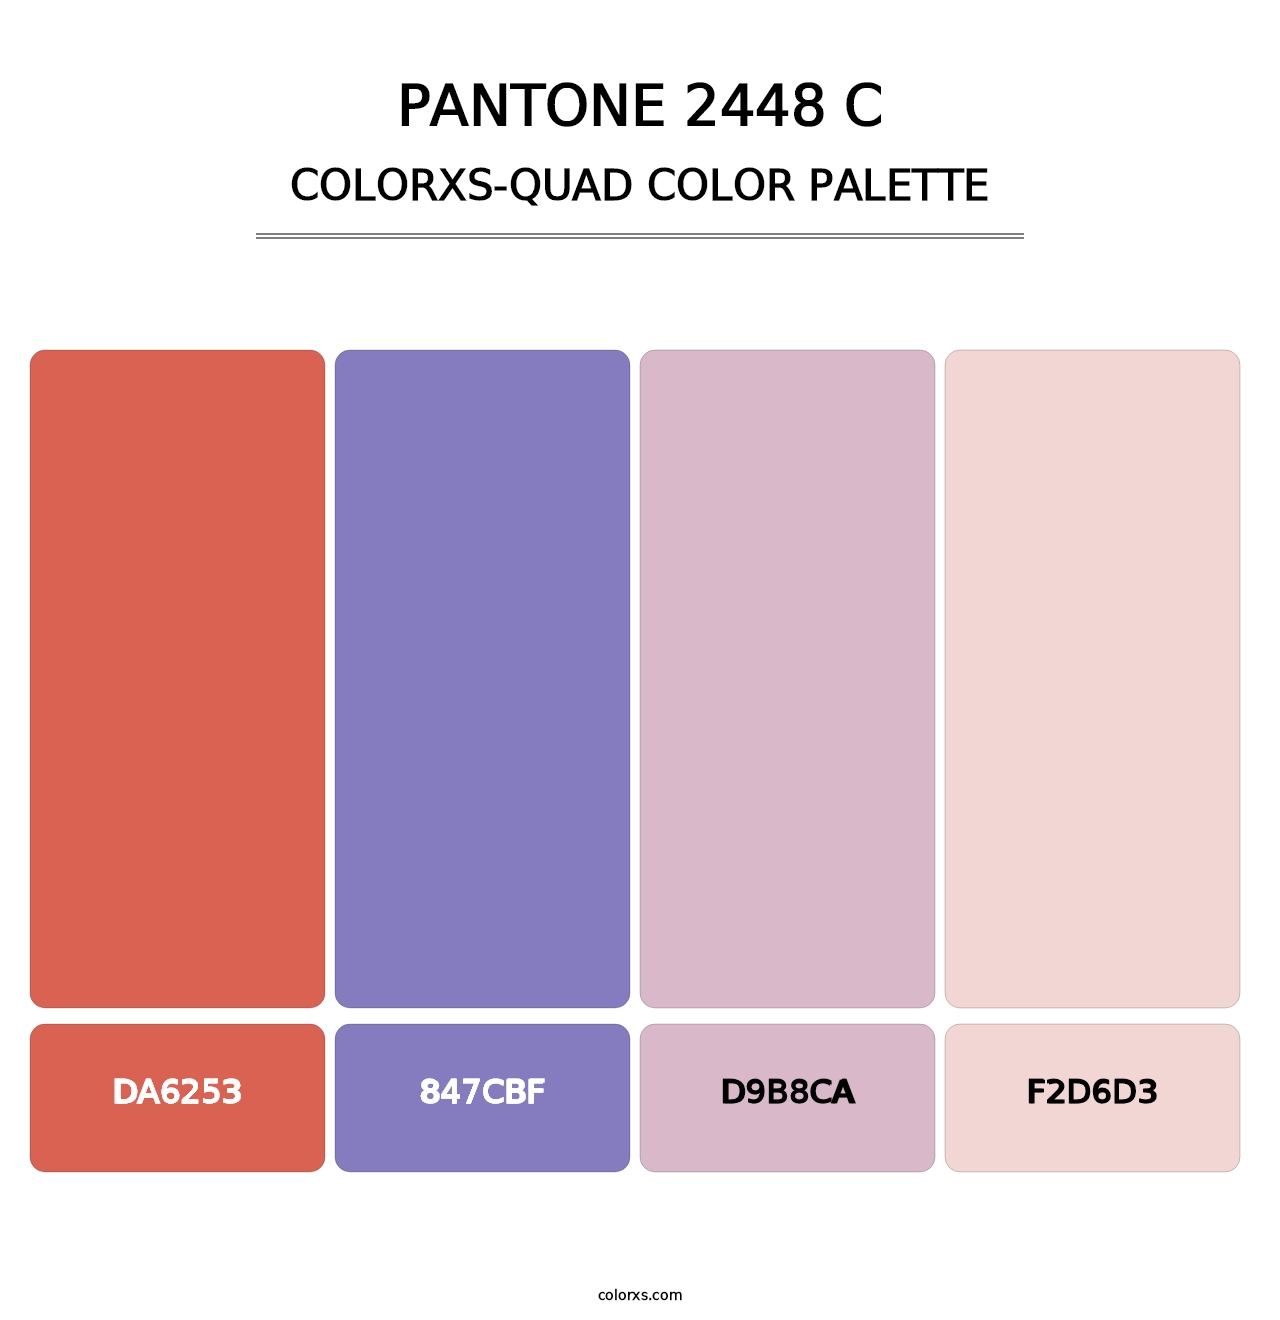 PANTONE 2448 C - Colorxs Quad Palette